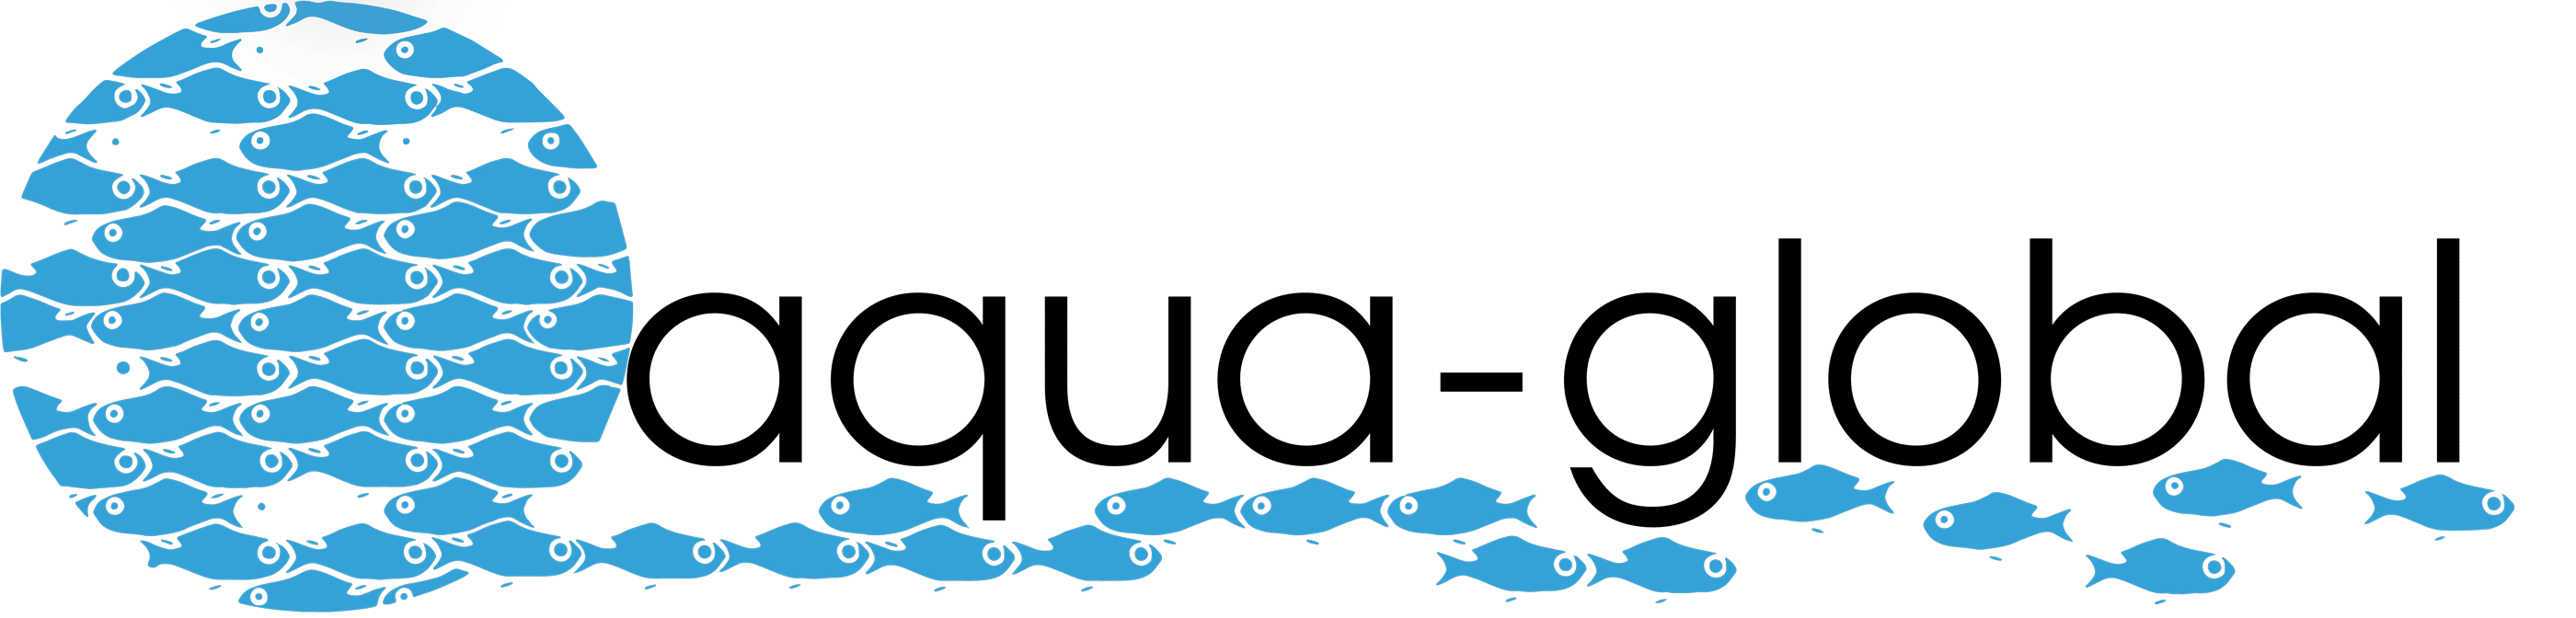 Zierfischgroßhandel Aqua-Global